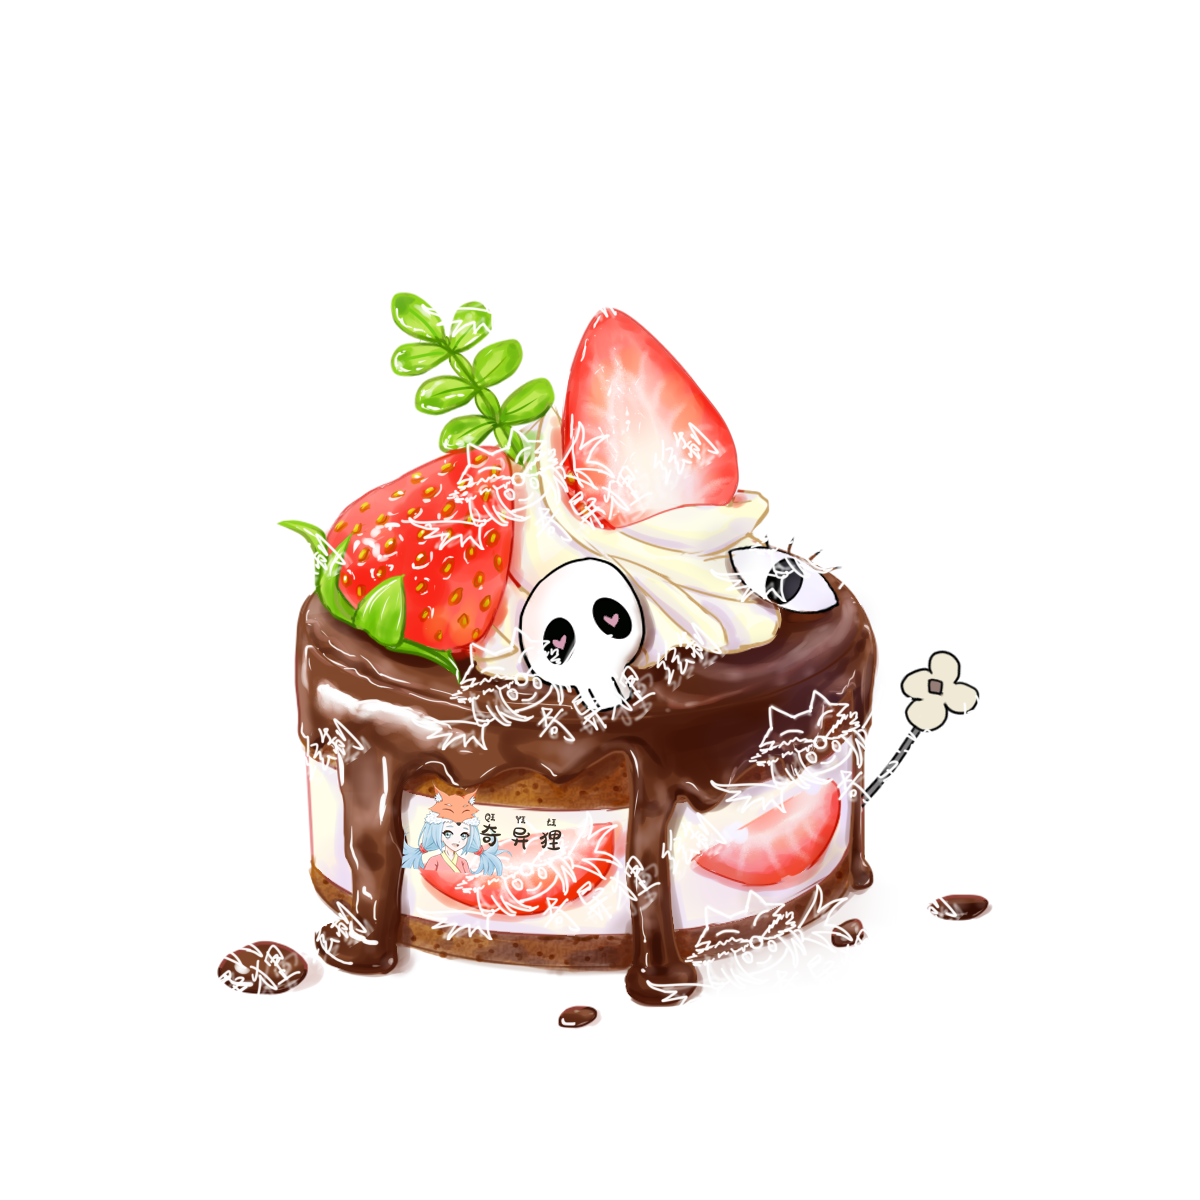 草莓巧克力小蛋糕